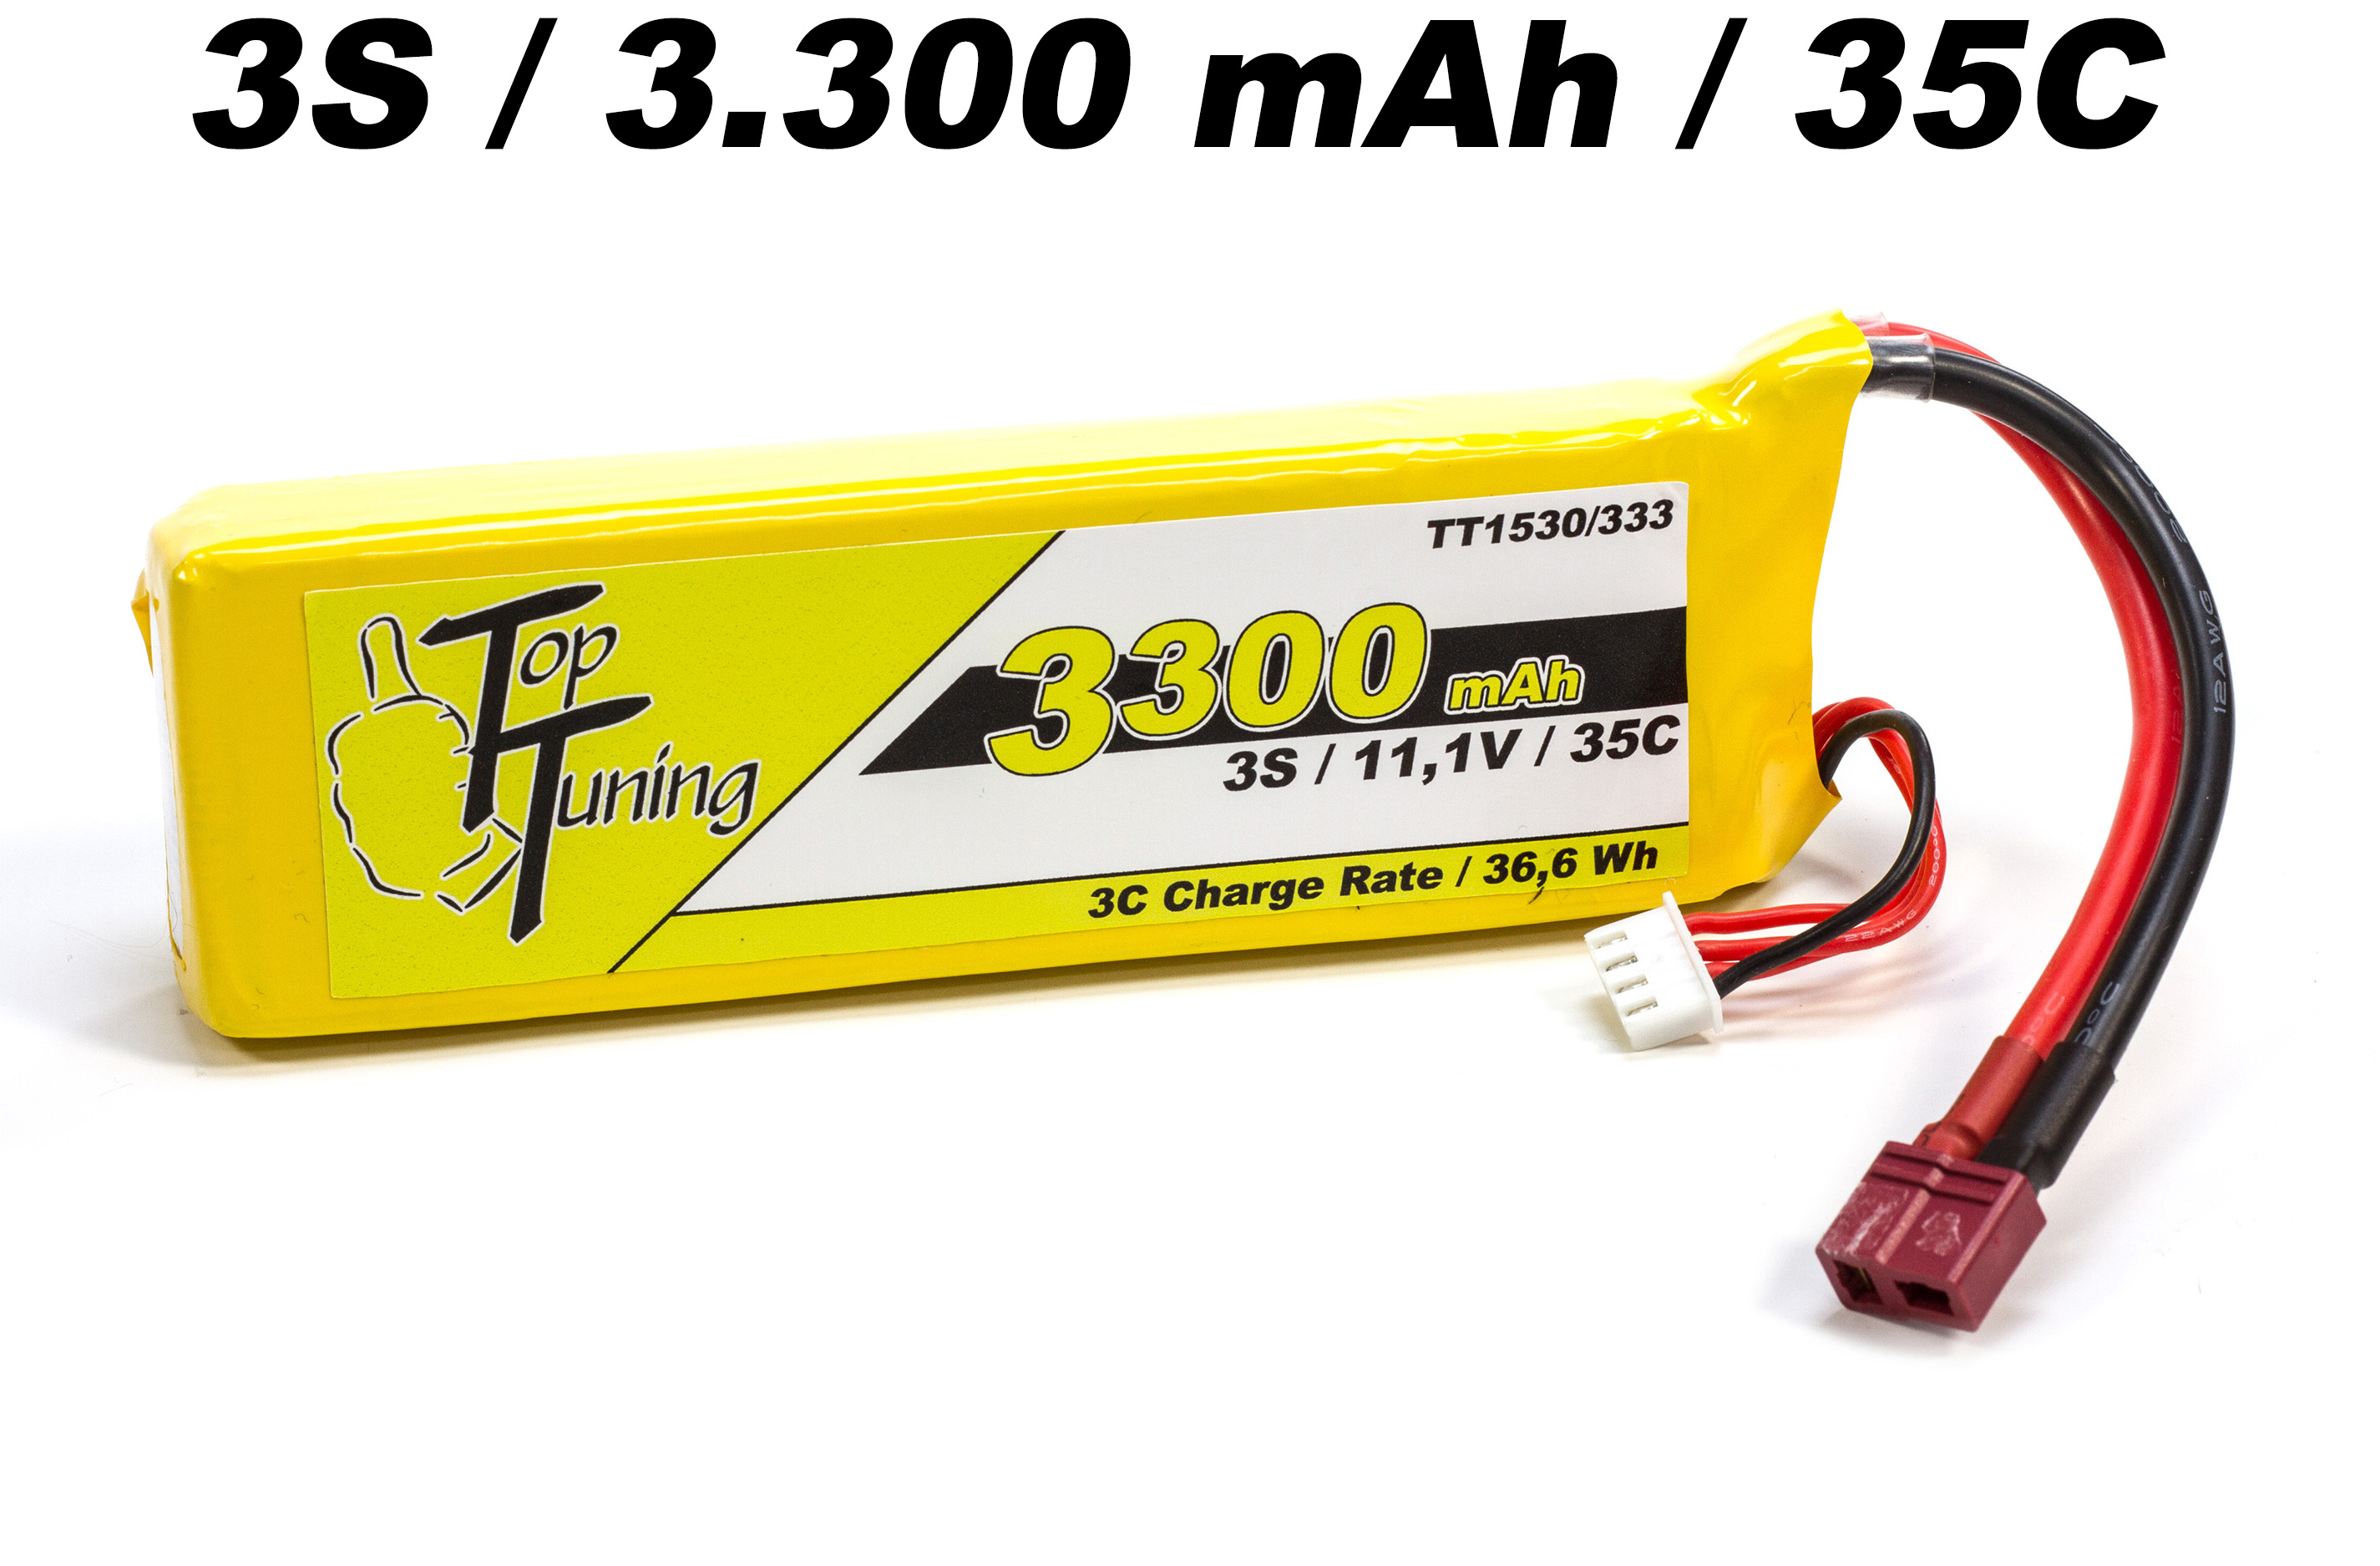 TT1530/333 Top Tuning 3300 mAh LiPo battery 3S, 11,1V Offer